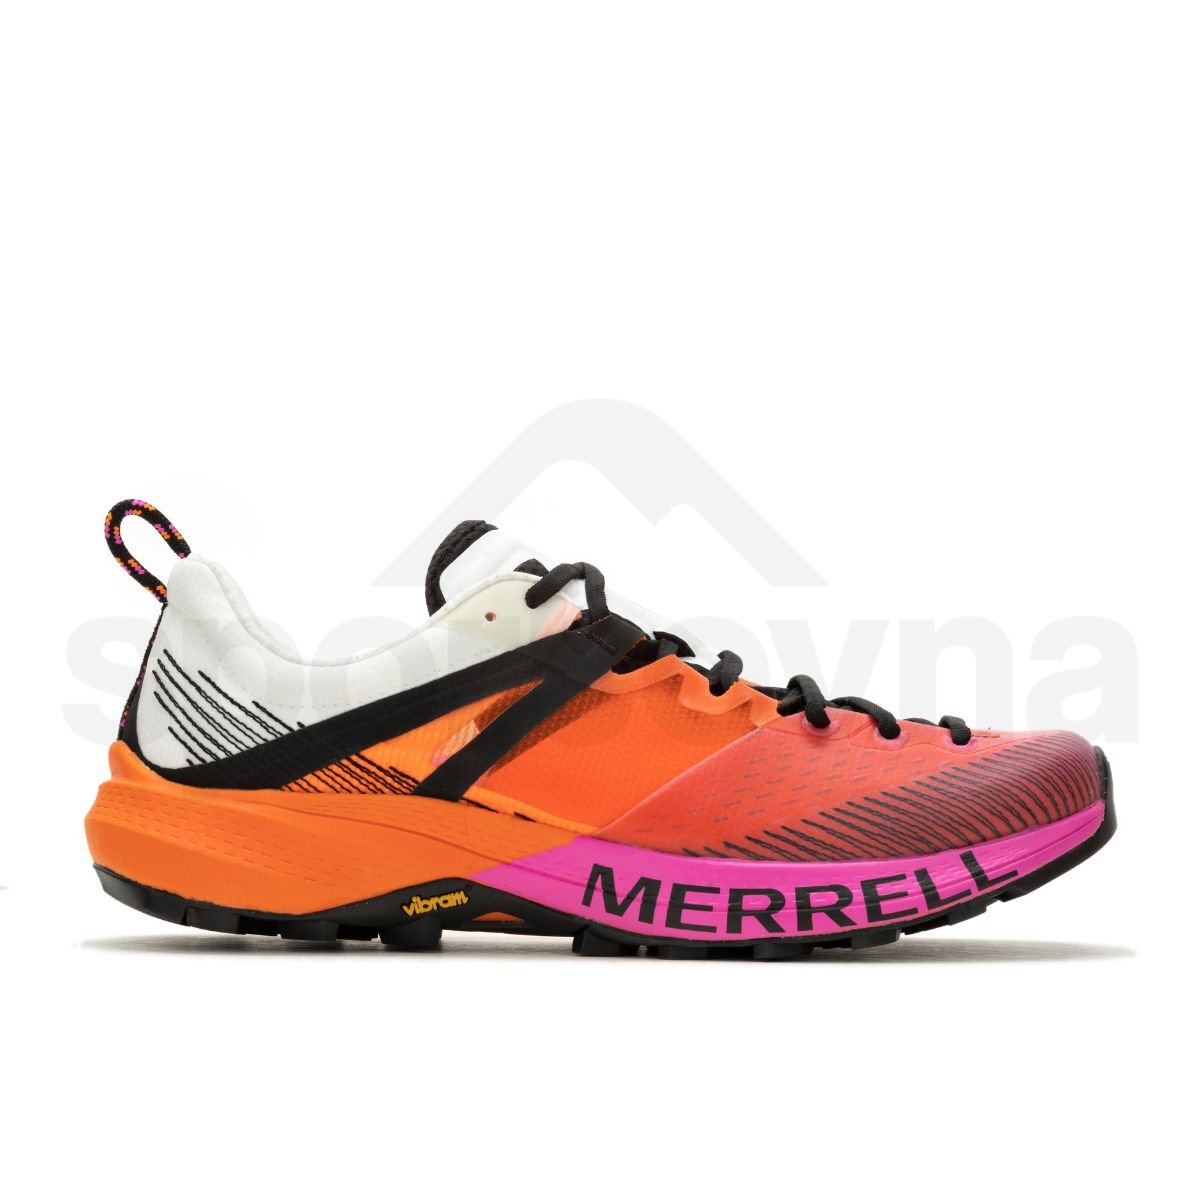 Obuv Merrell J037669 MTL MQM M - bílá/oranžová